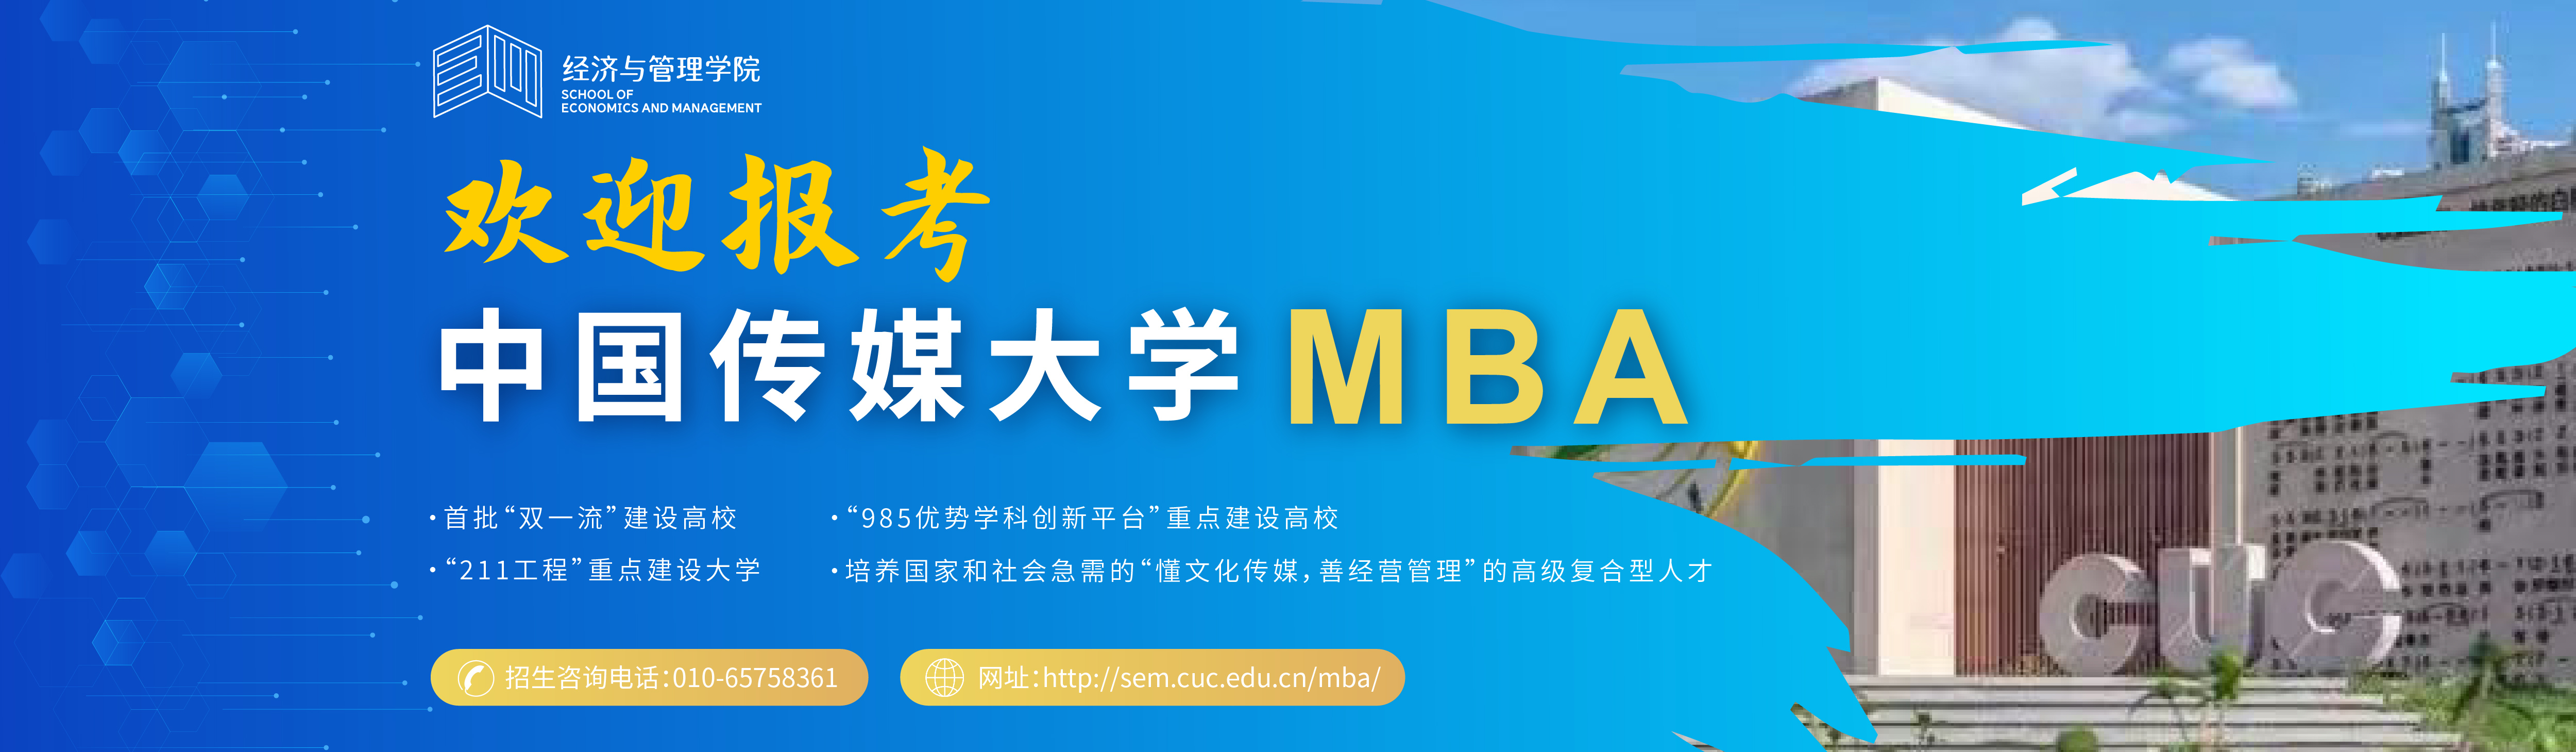 中国传媒大学MBA